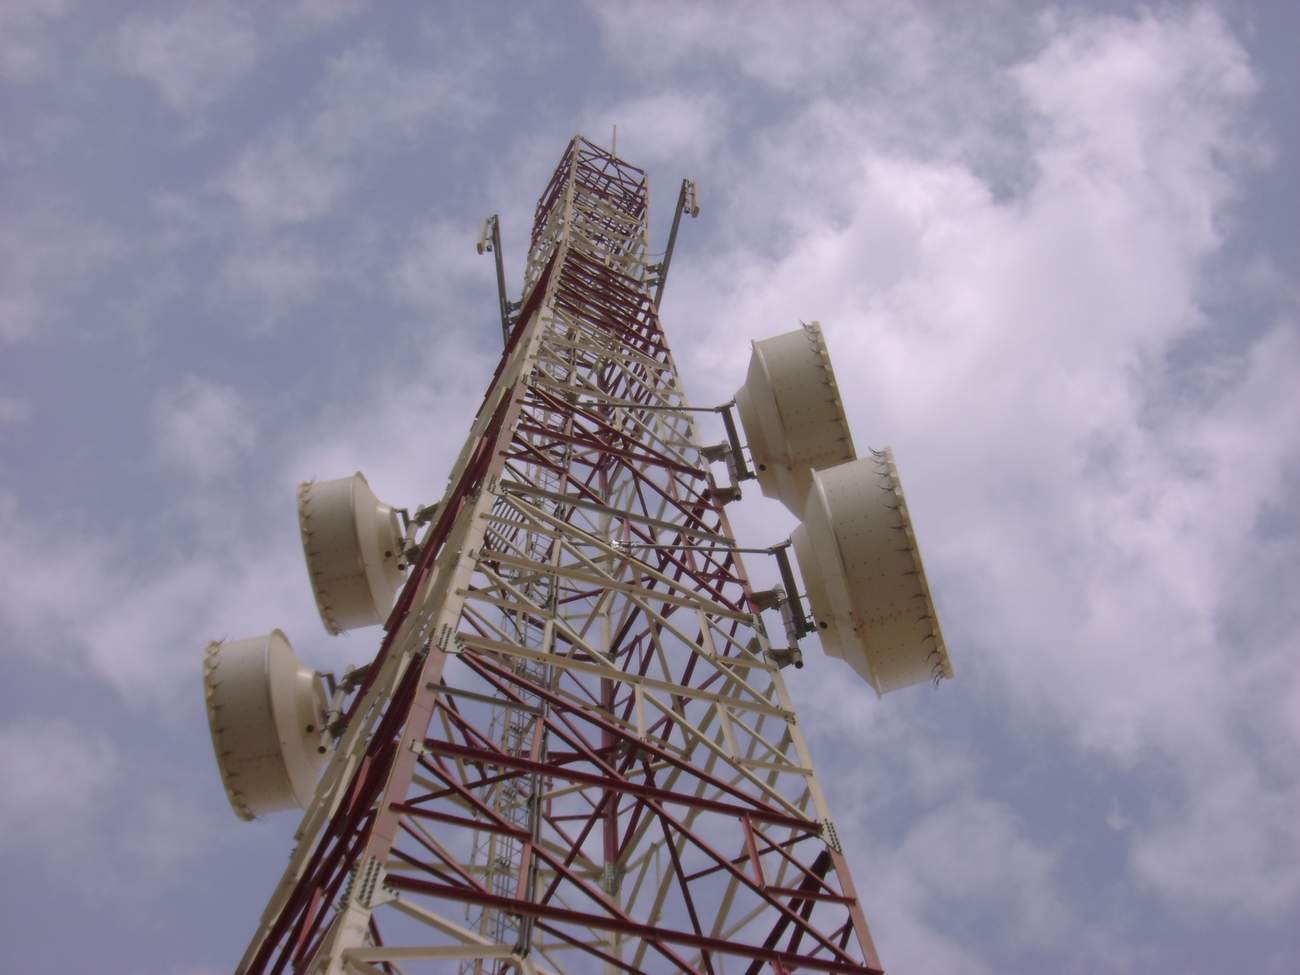 telecom tower